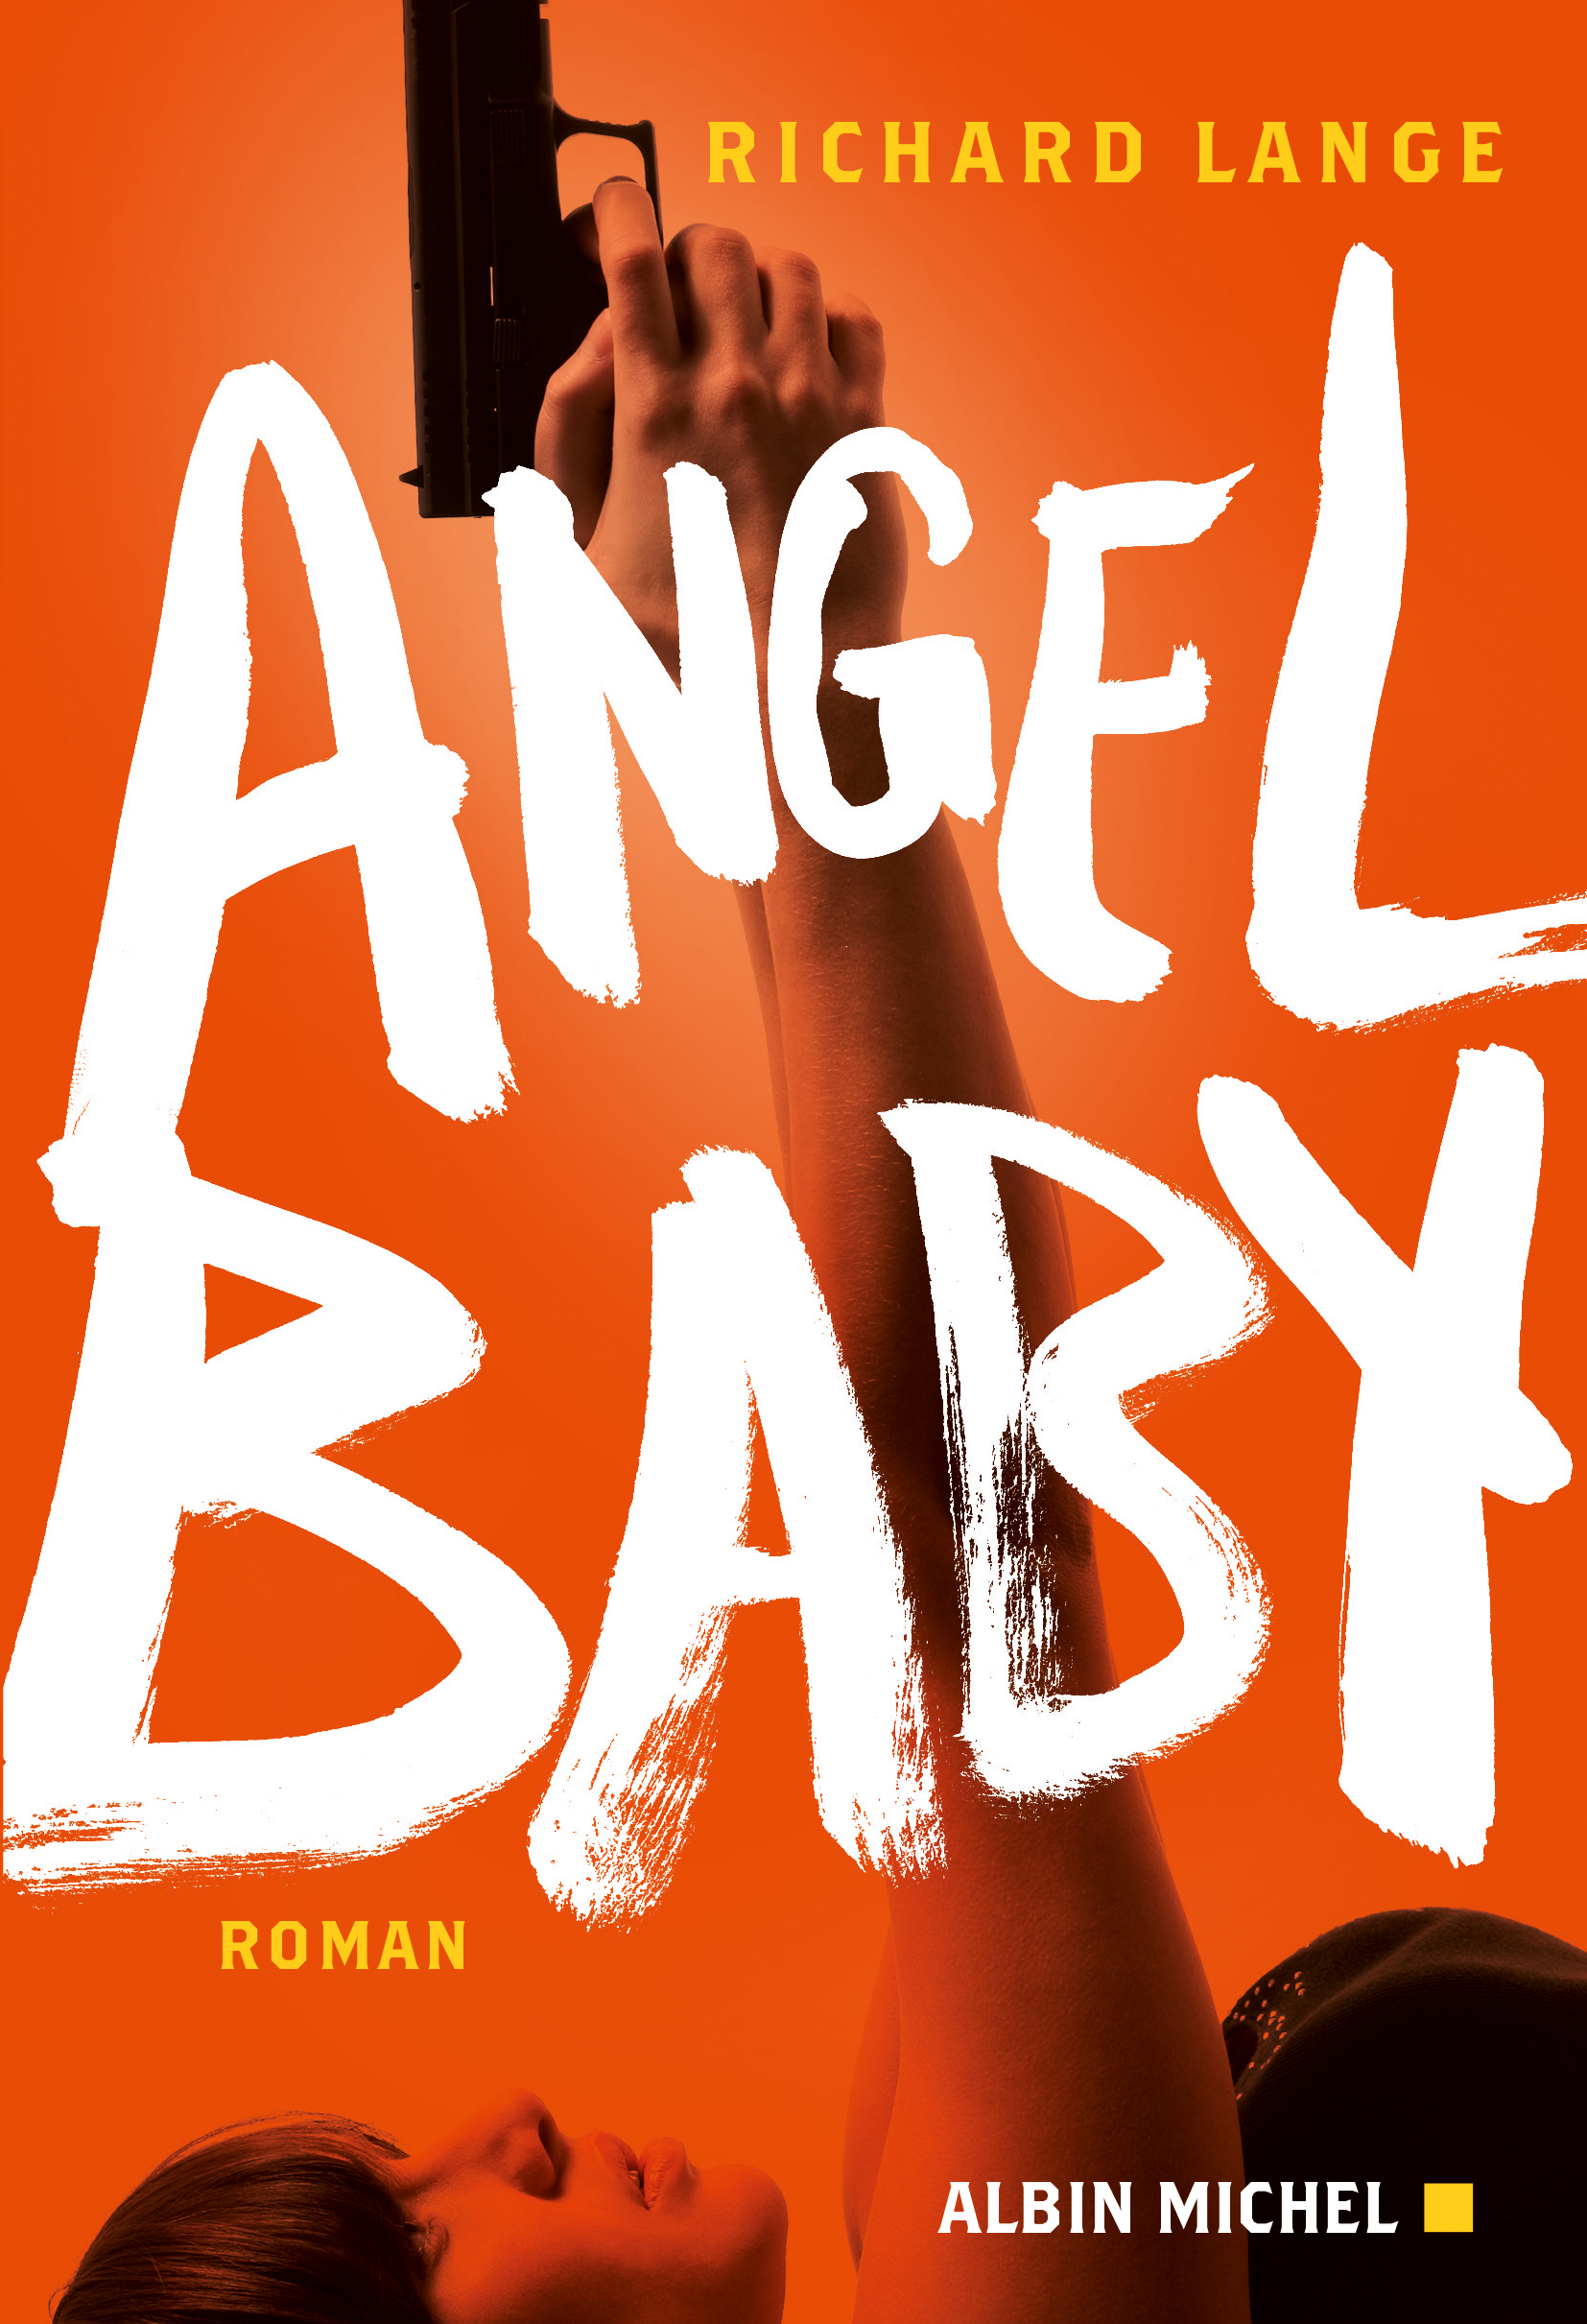 Couverture du livre Angel baby